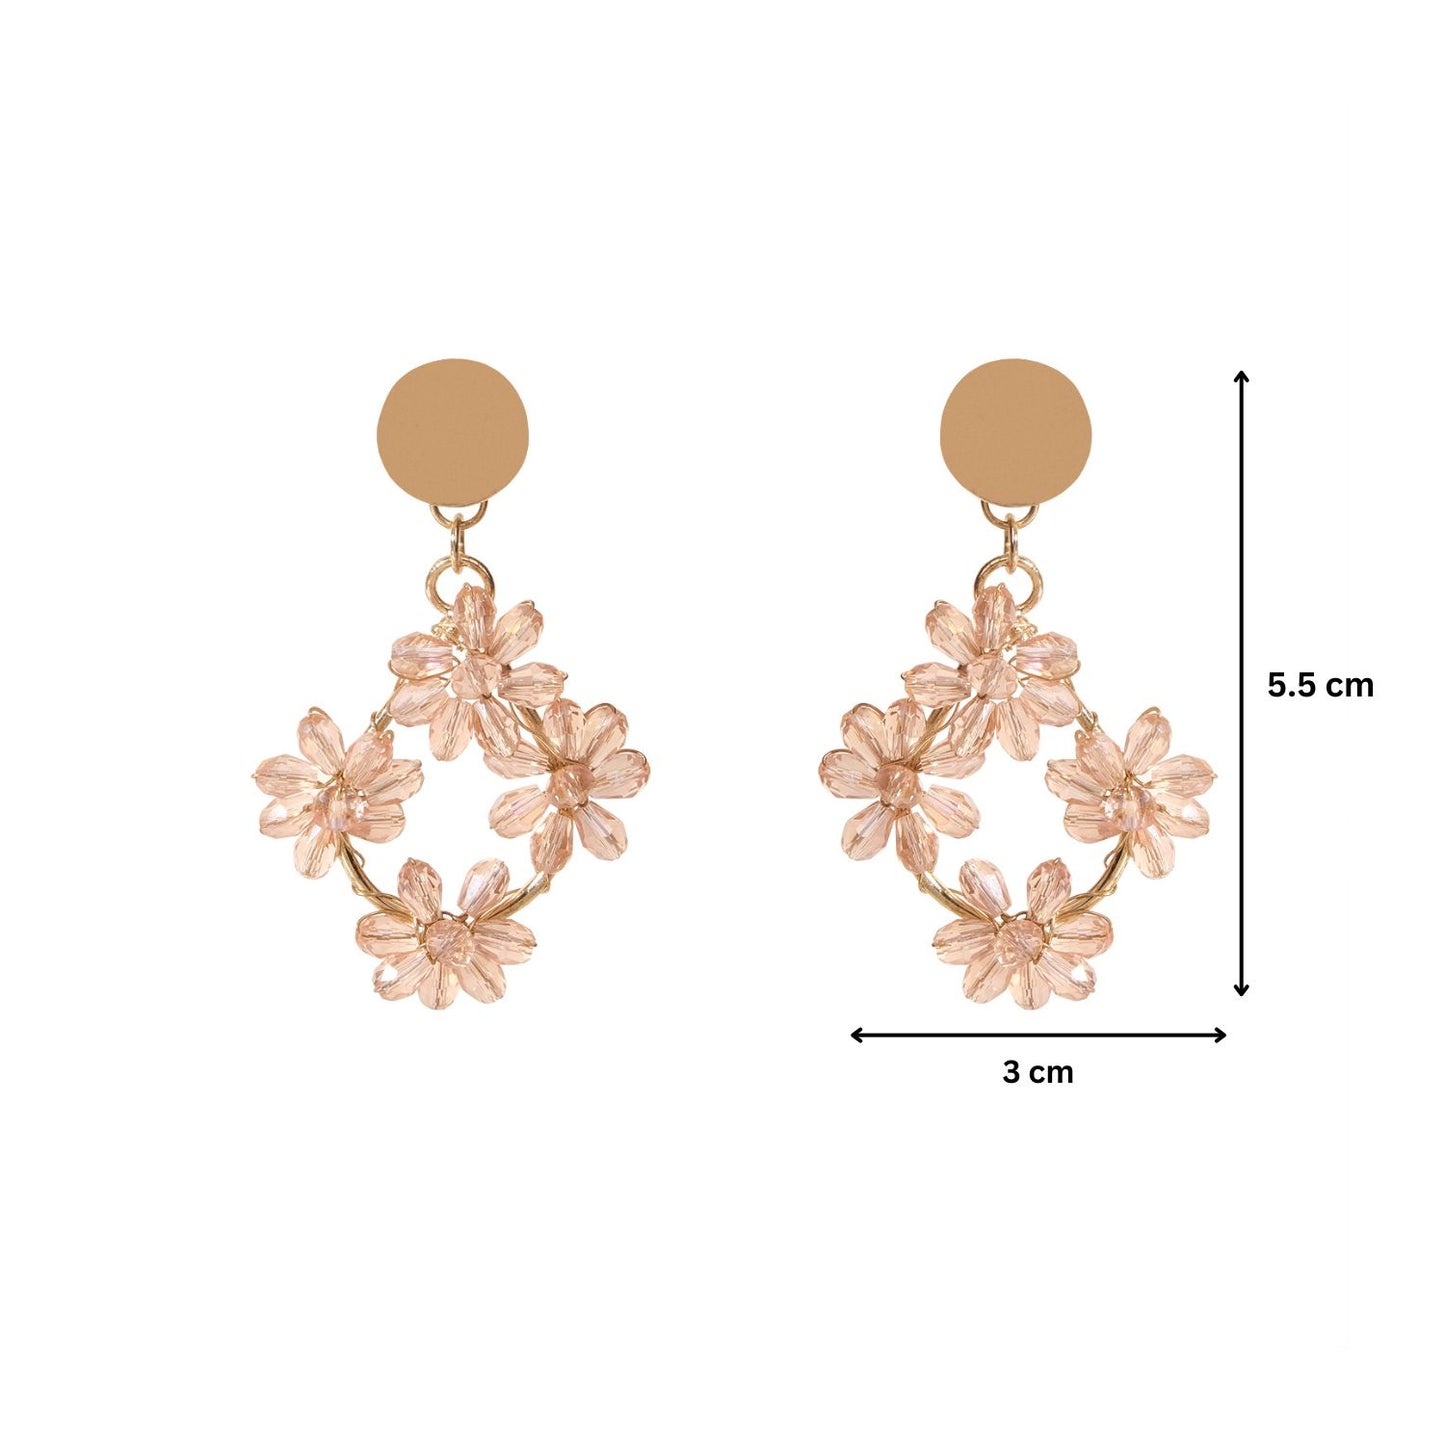 Tetra Floral Dangler Earrings